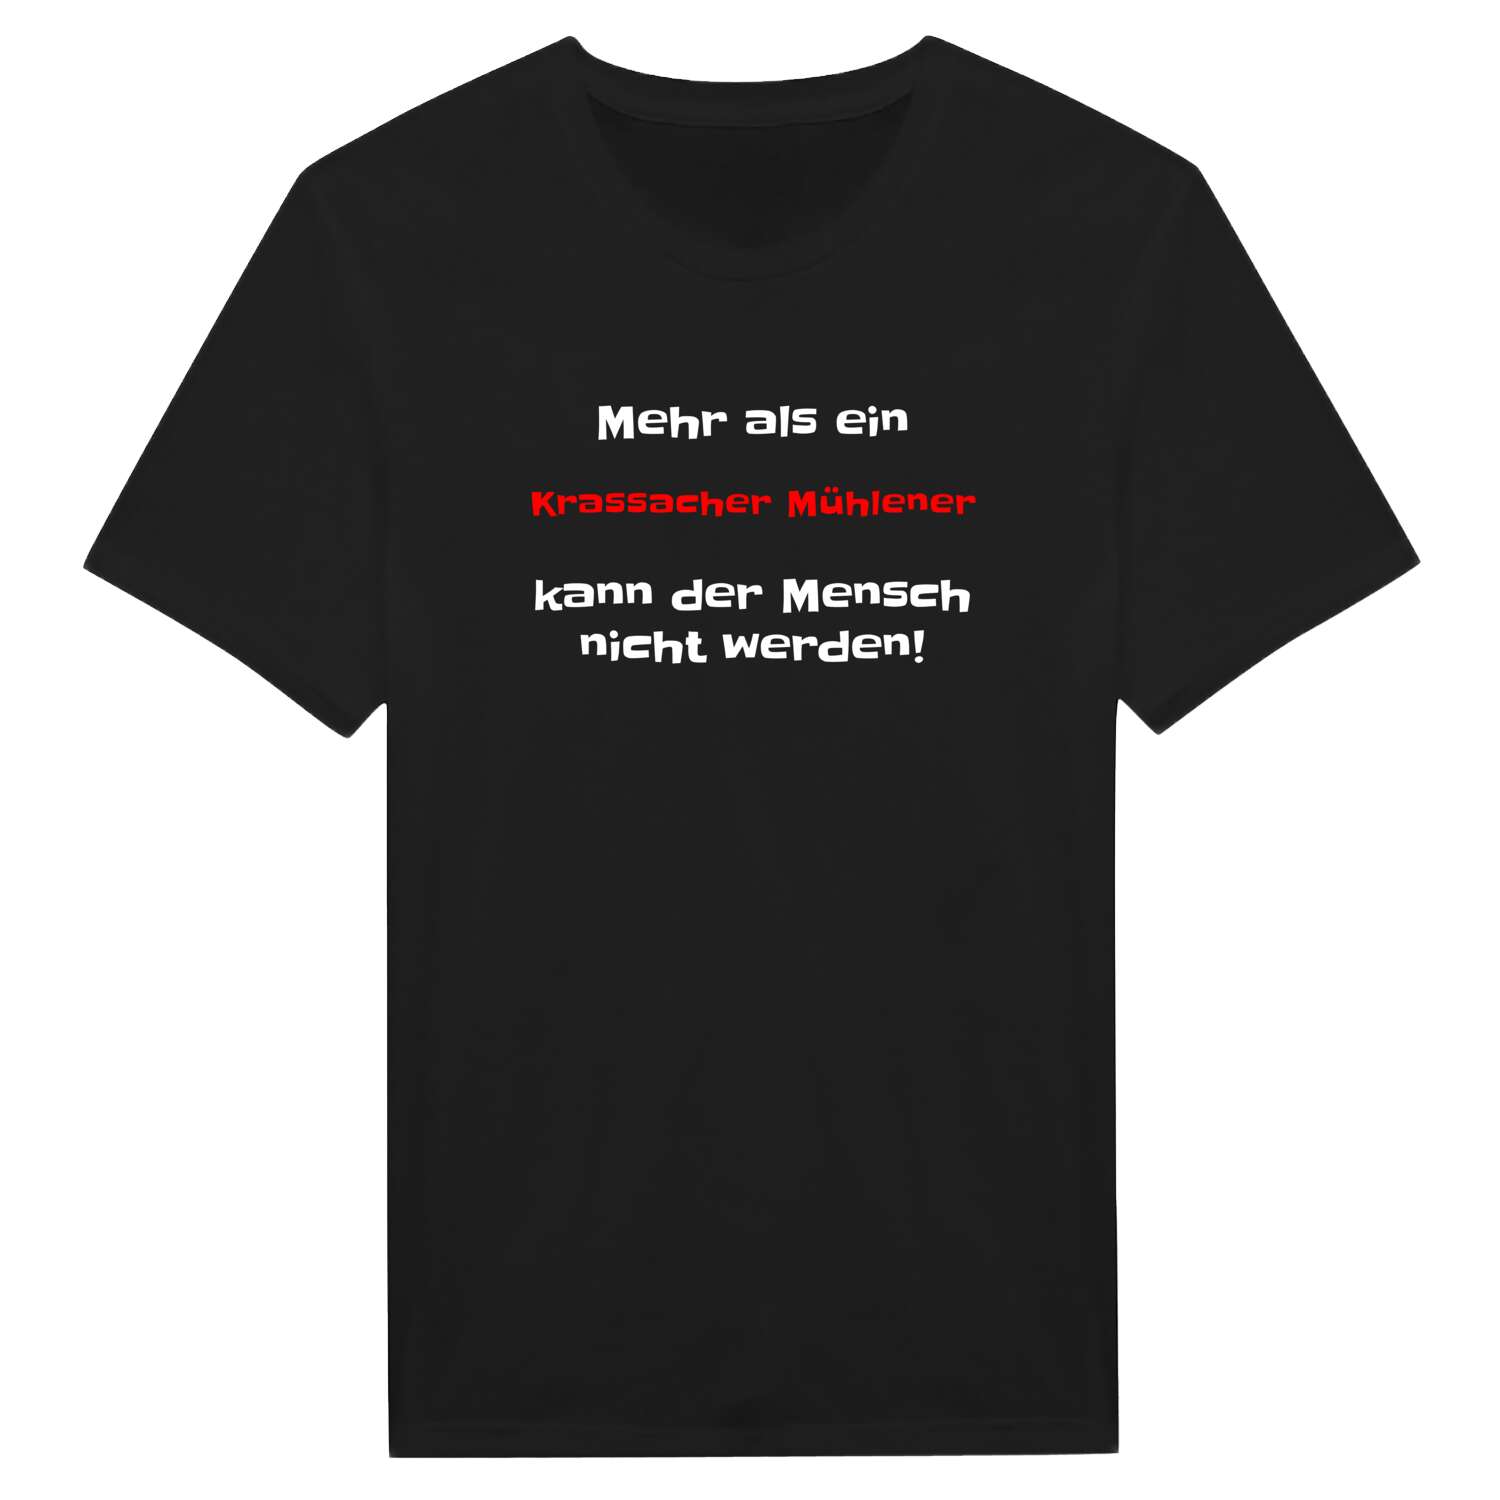 Krassacher Mühle T-Shirt »Mehr als ein«